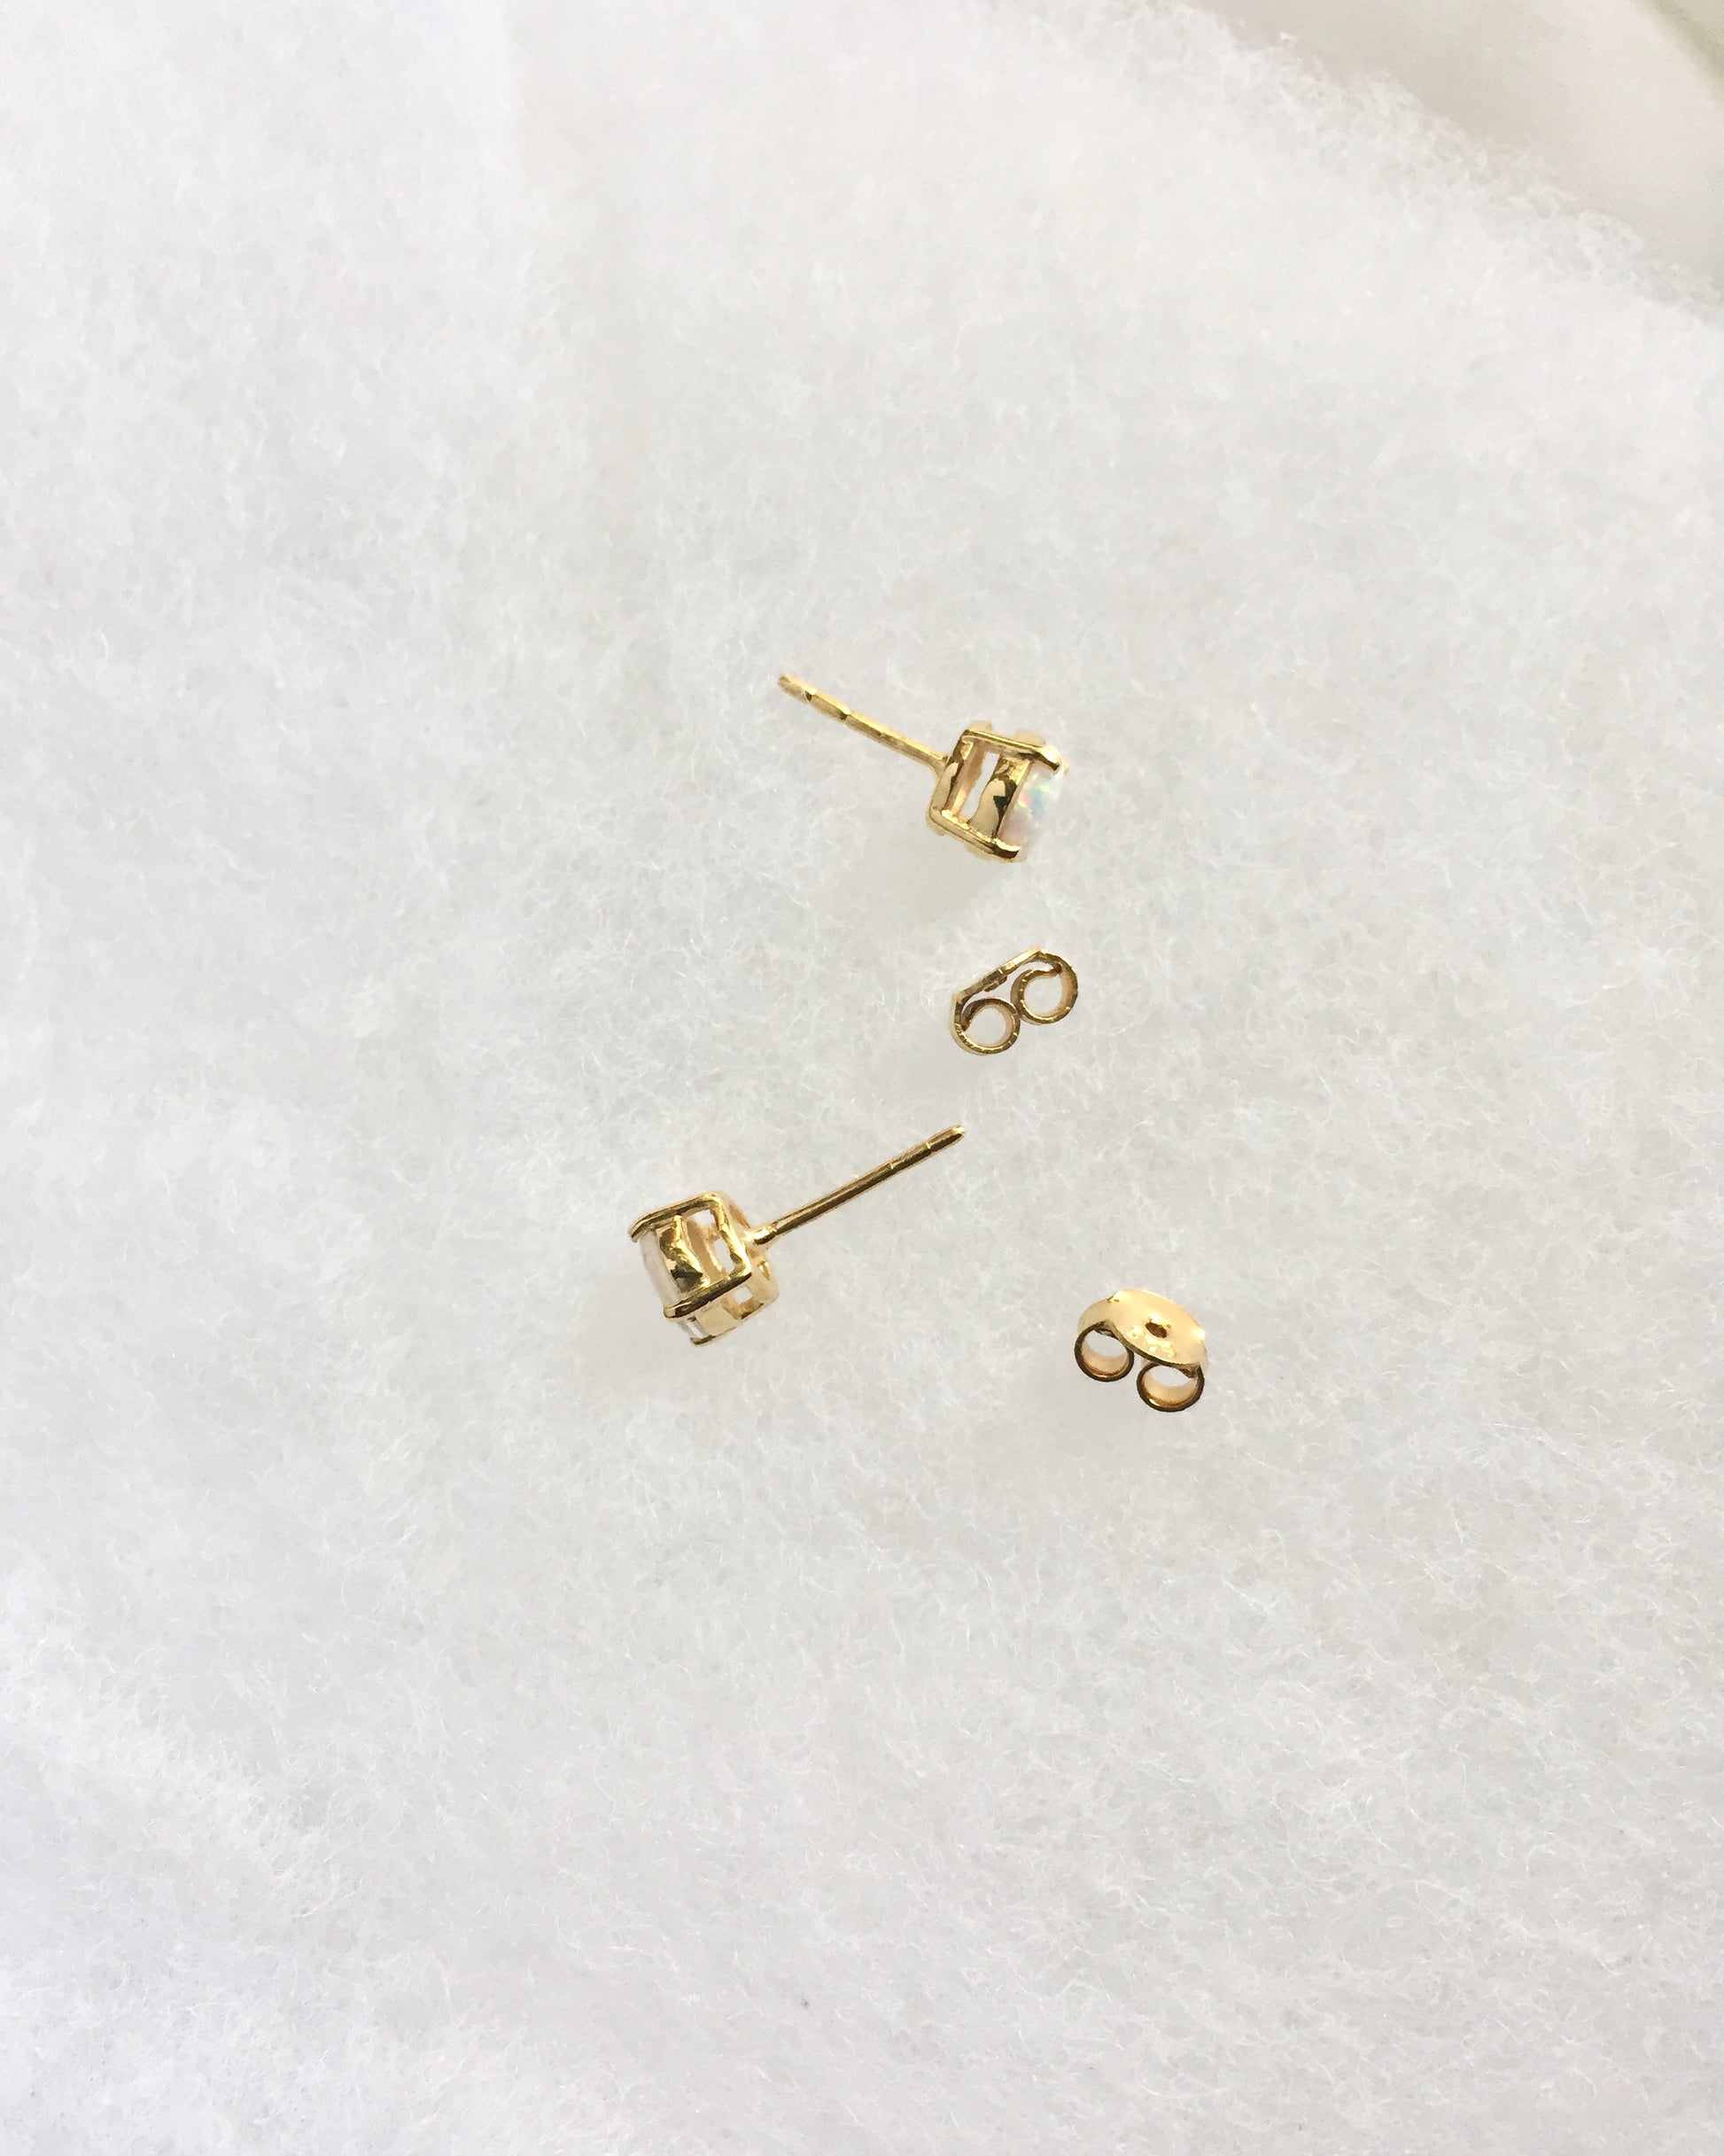 Small Opal Stud Earrings | White Opal Stud Earrings 14k Gold Plated | Delicate Stud Earrings | IB Jewelry